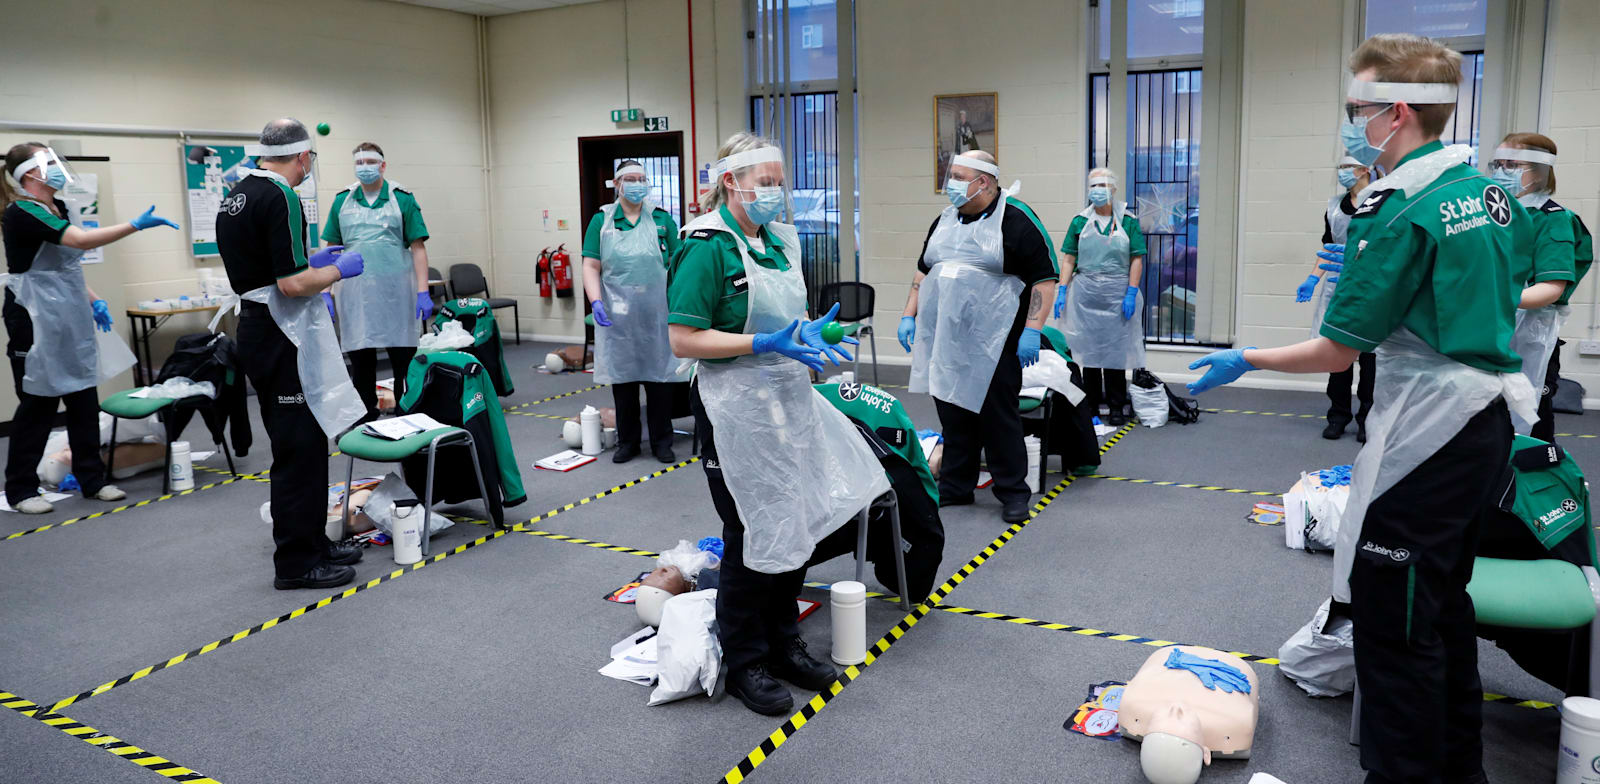 מתנדבים מתאמנים לקראת מבצע החיסון, בדרבי. החיסונים יחלו בשבוע הבא / צילום: Reuters, Lee Smith